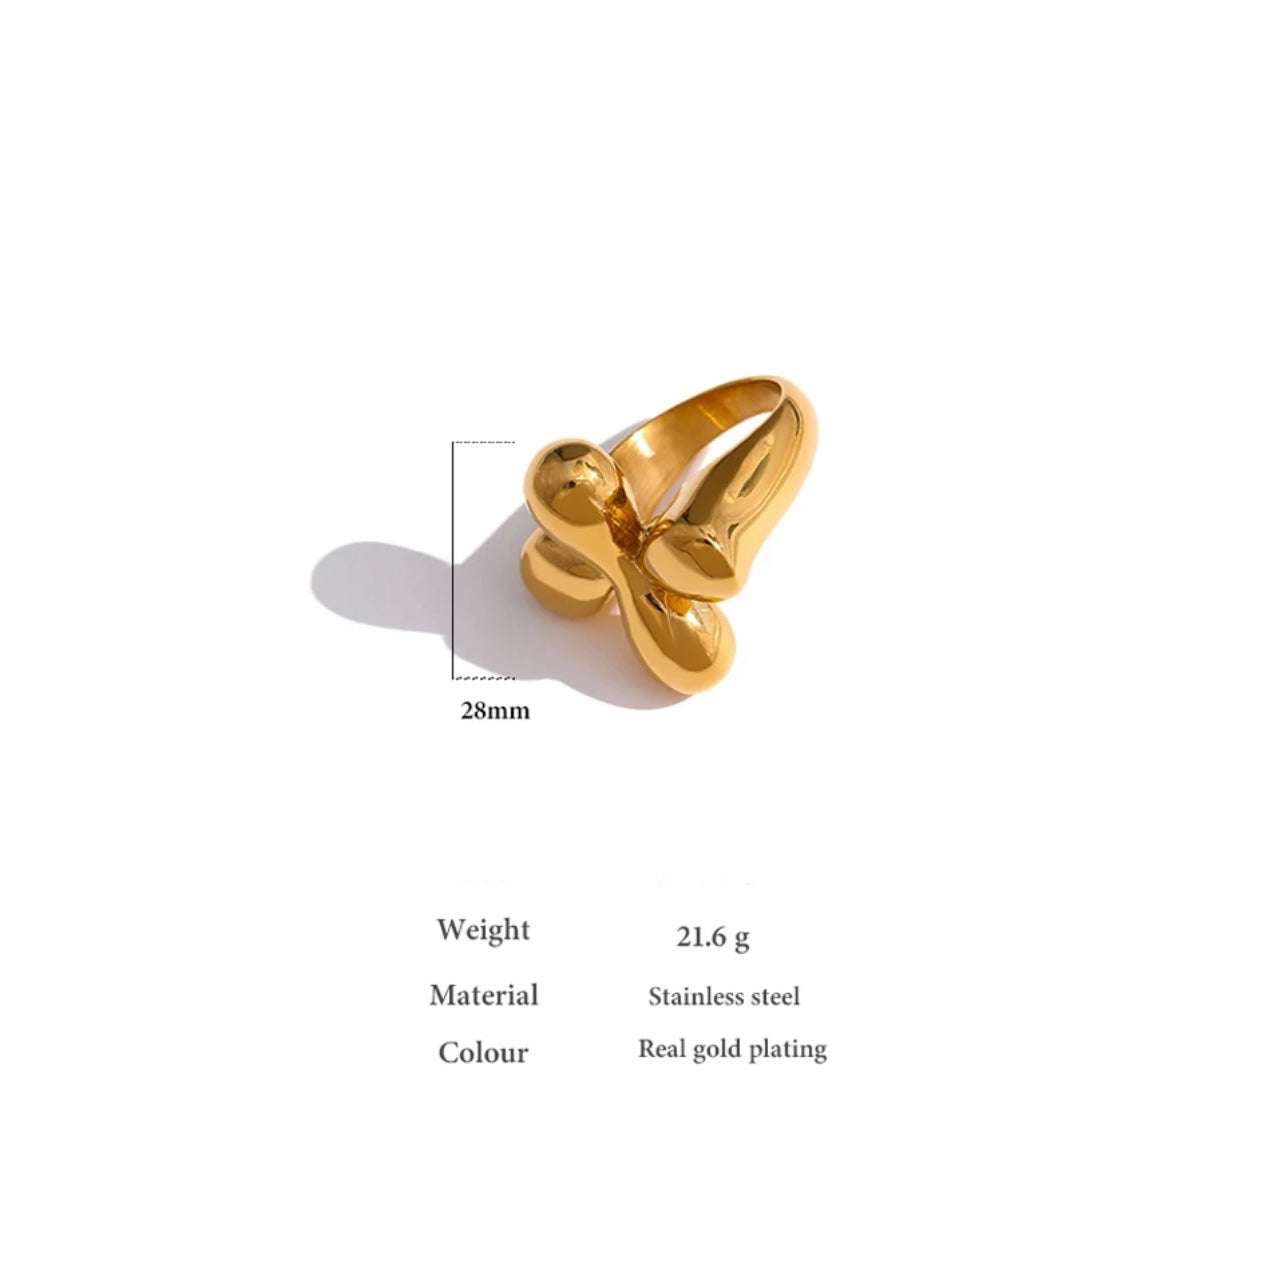 Radiant flower Gold ring